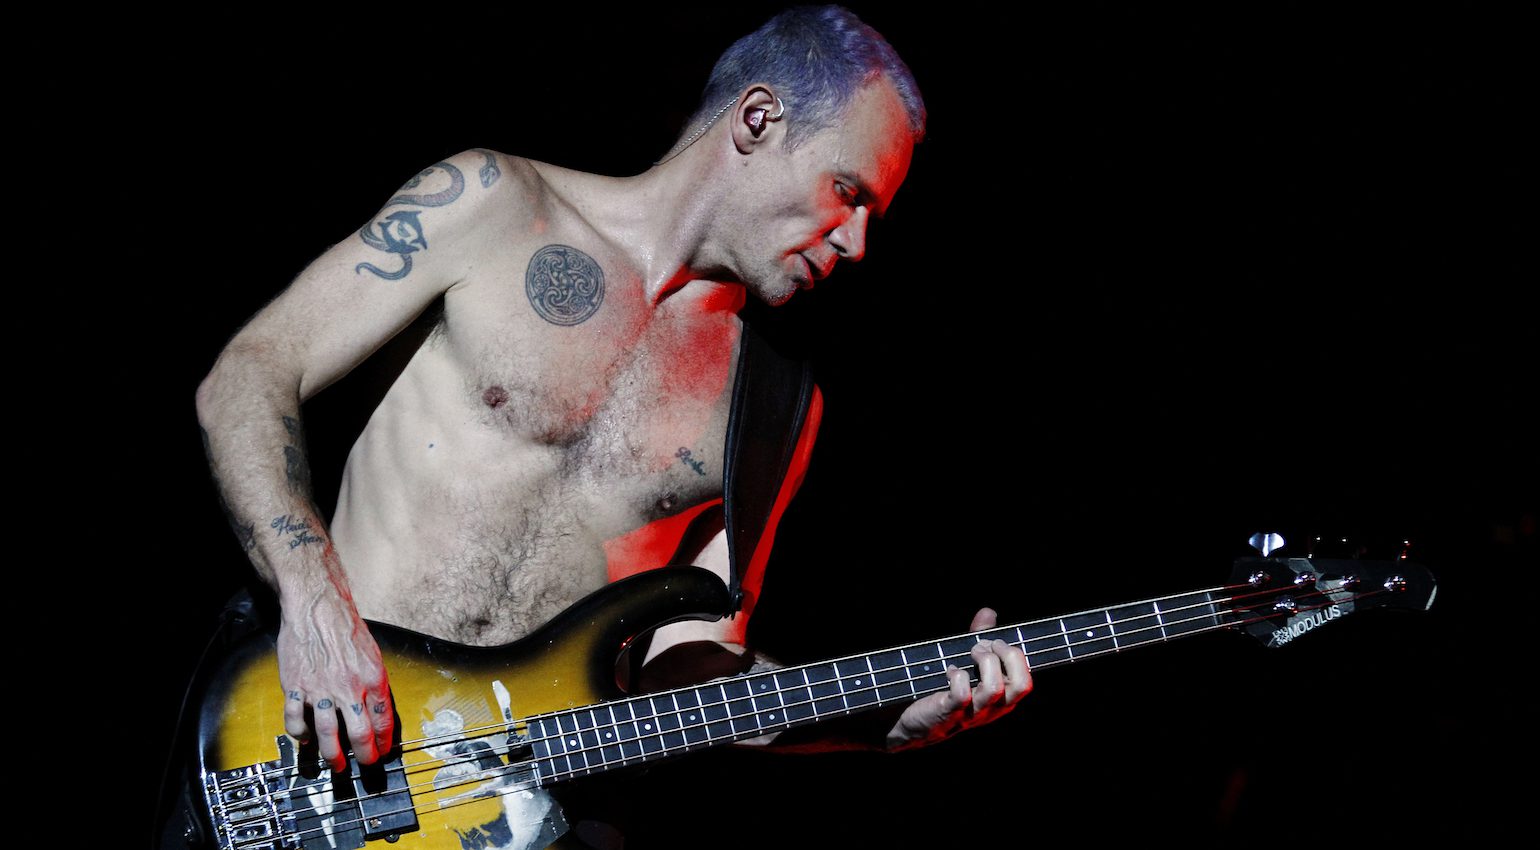 Der Sound der Kultrockband Red Hot Chili Peppers